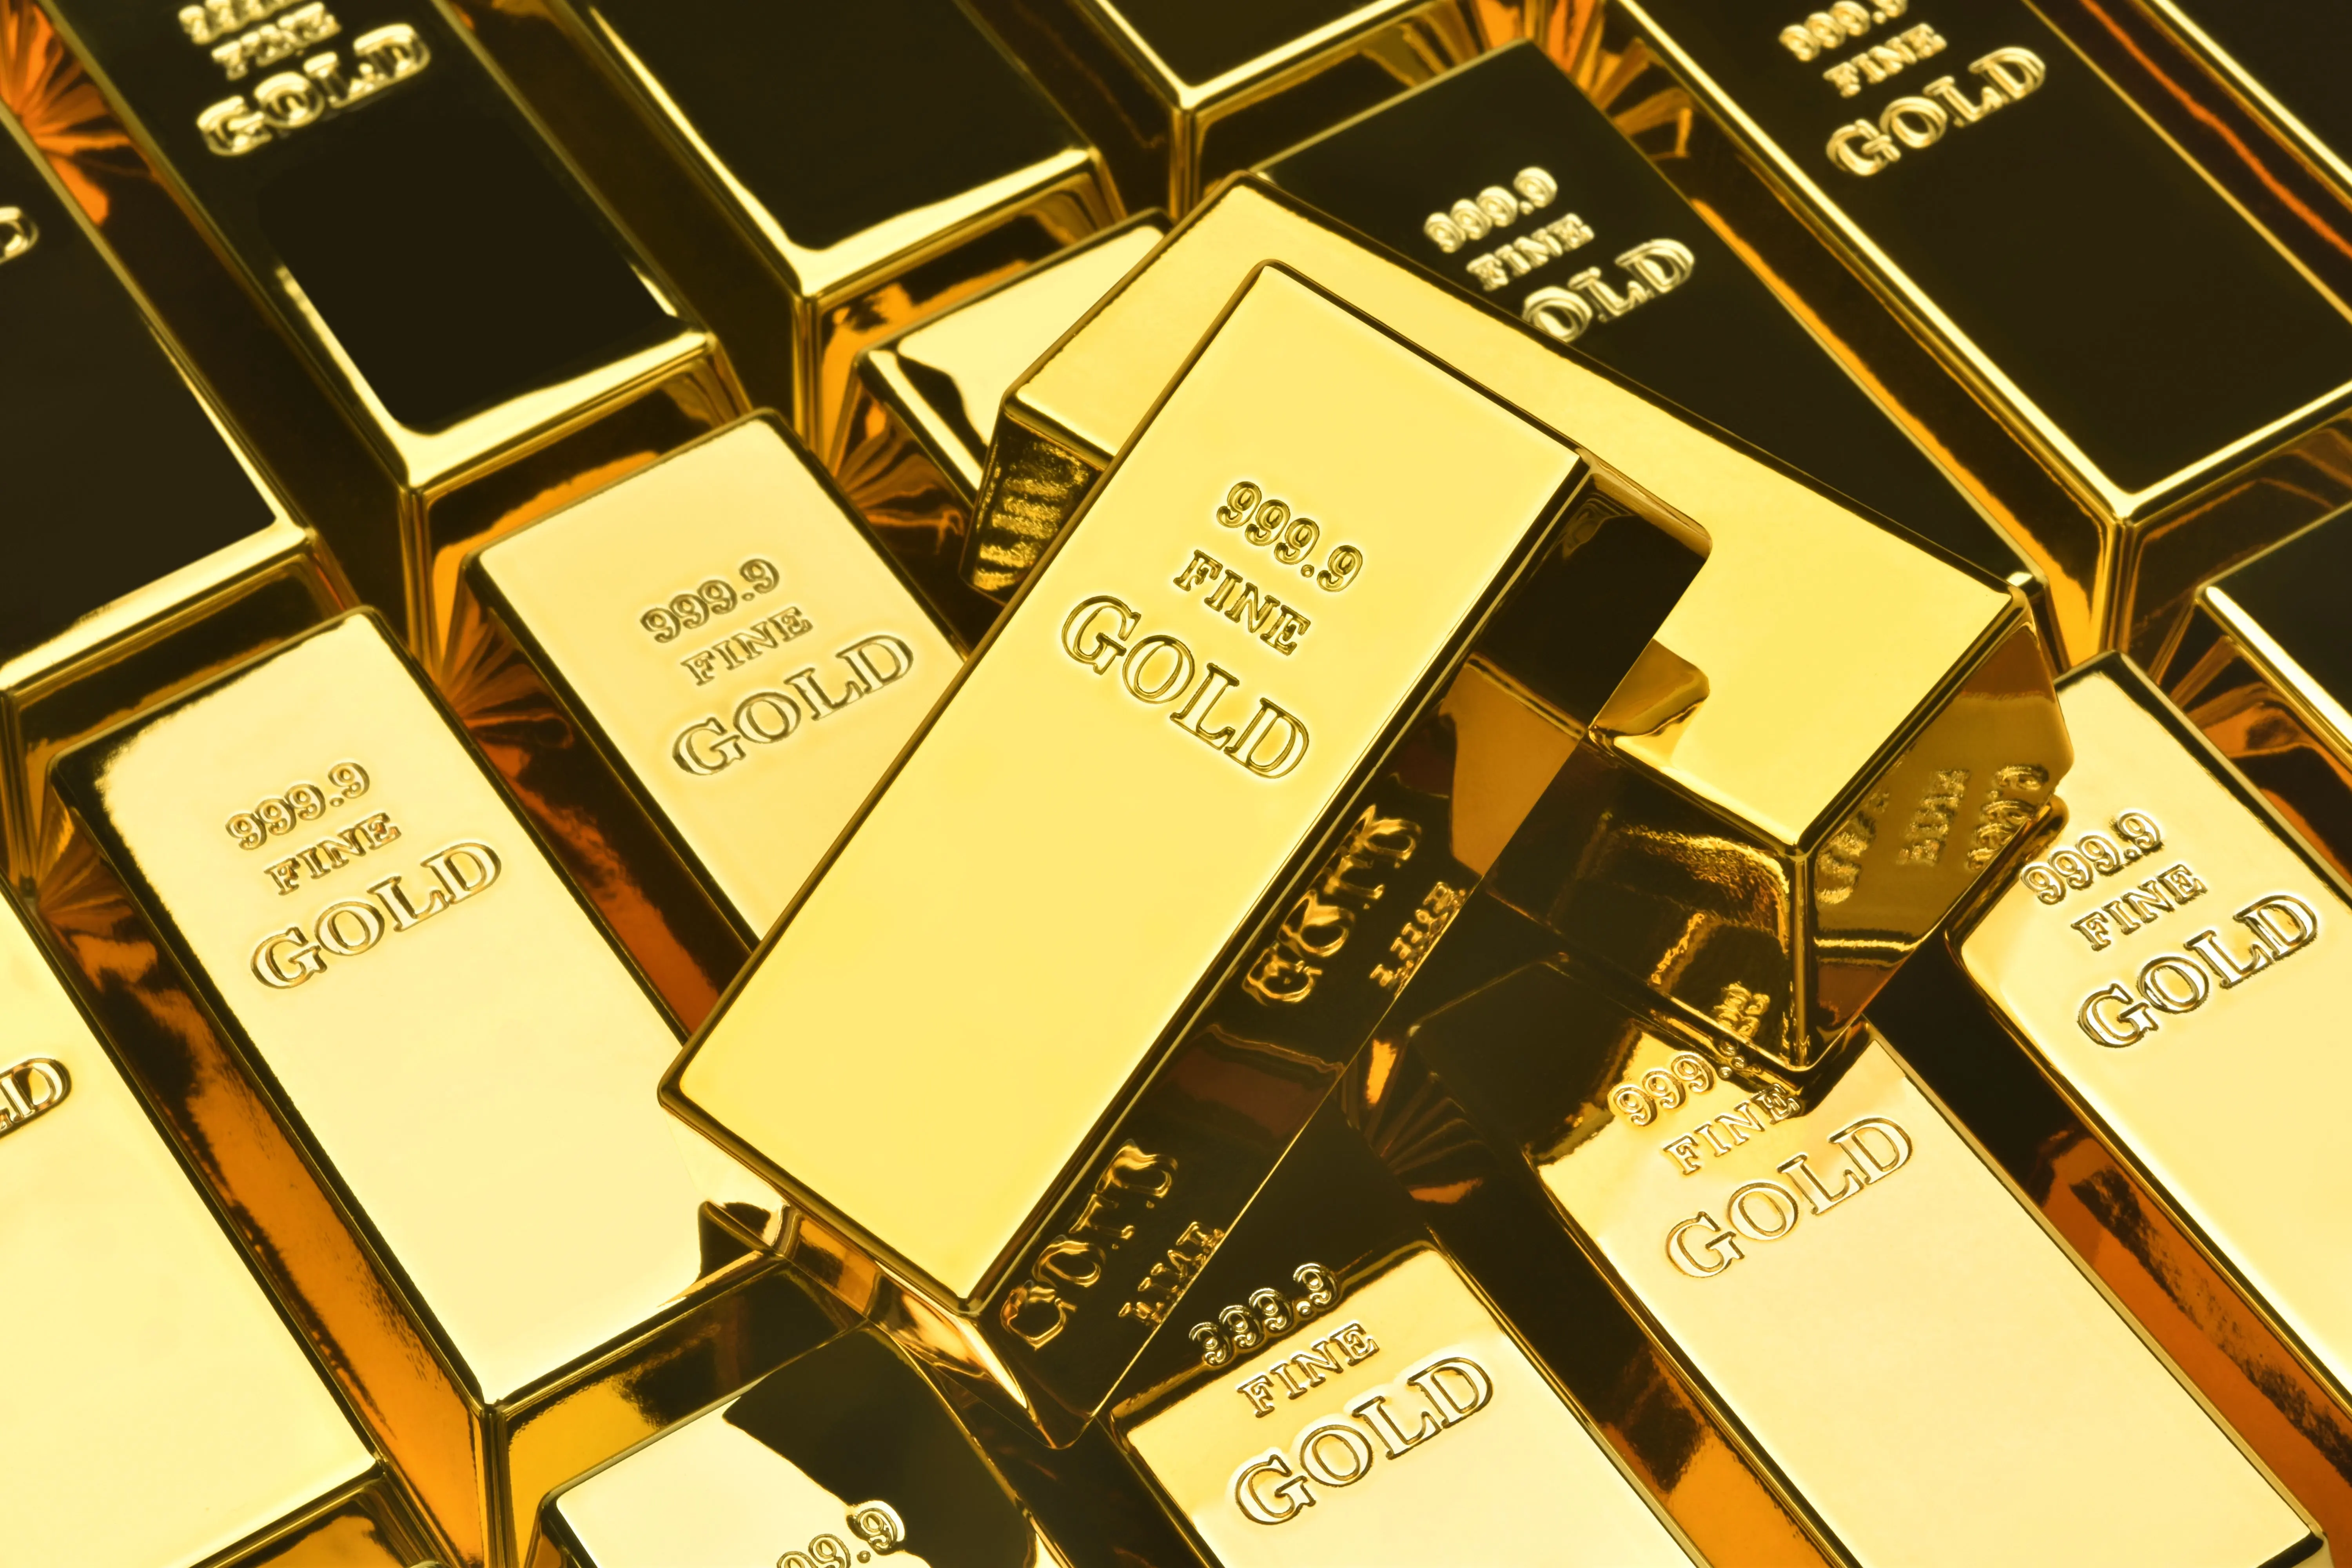 : Золото може поставити ще один фантастичний рекорд - прогнози від гігантів Волл-стріт.